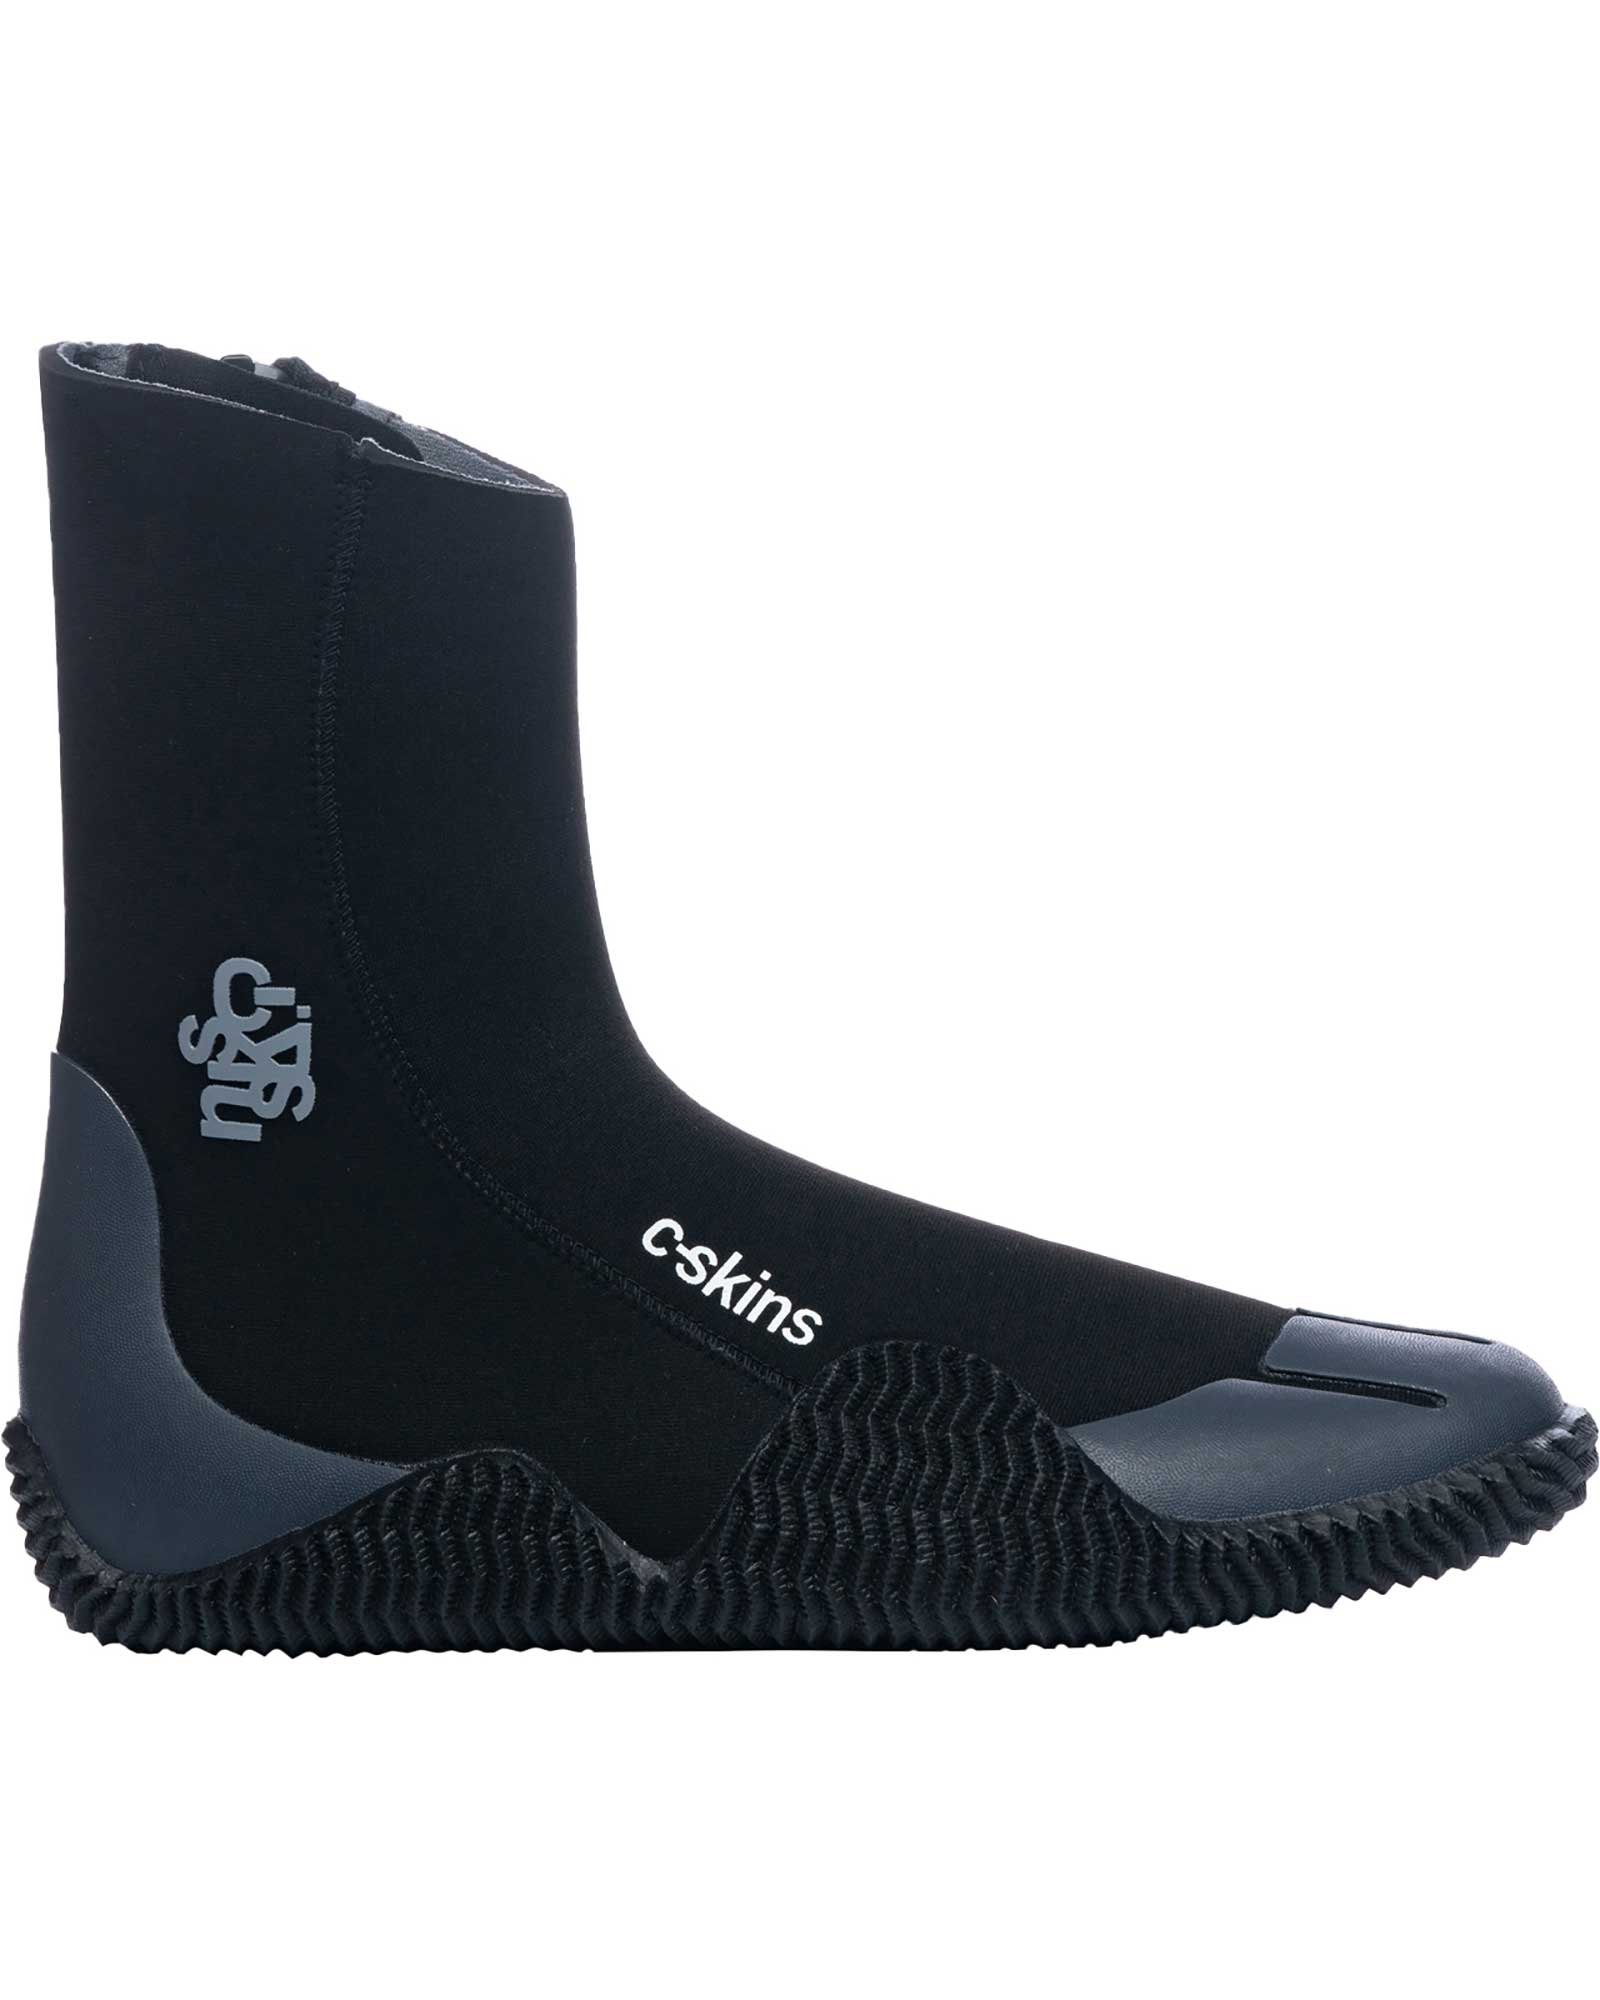 C Skins Legend 5mm Zipped Boots - Black/Charcoal UK 6